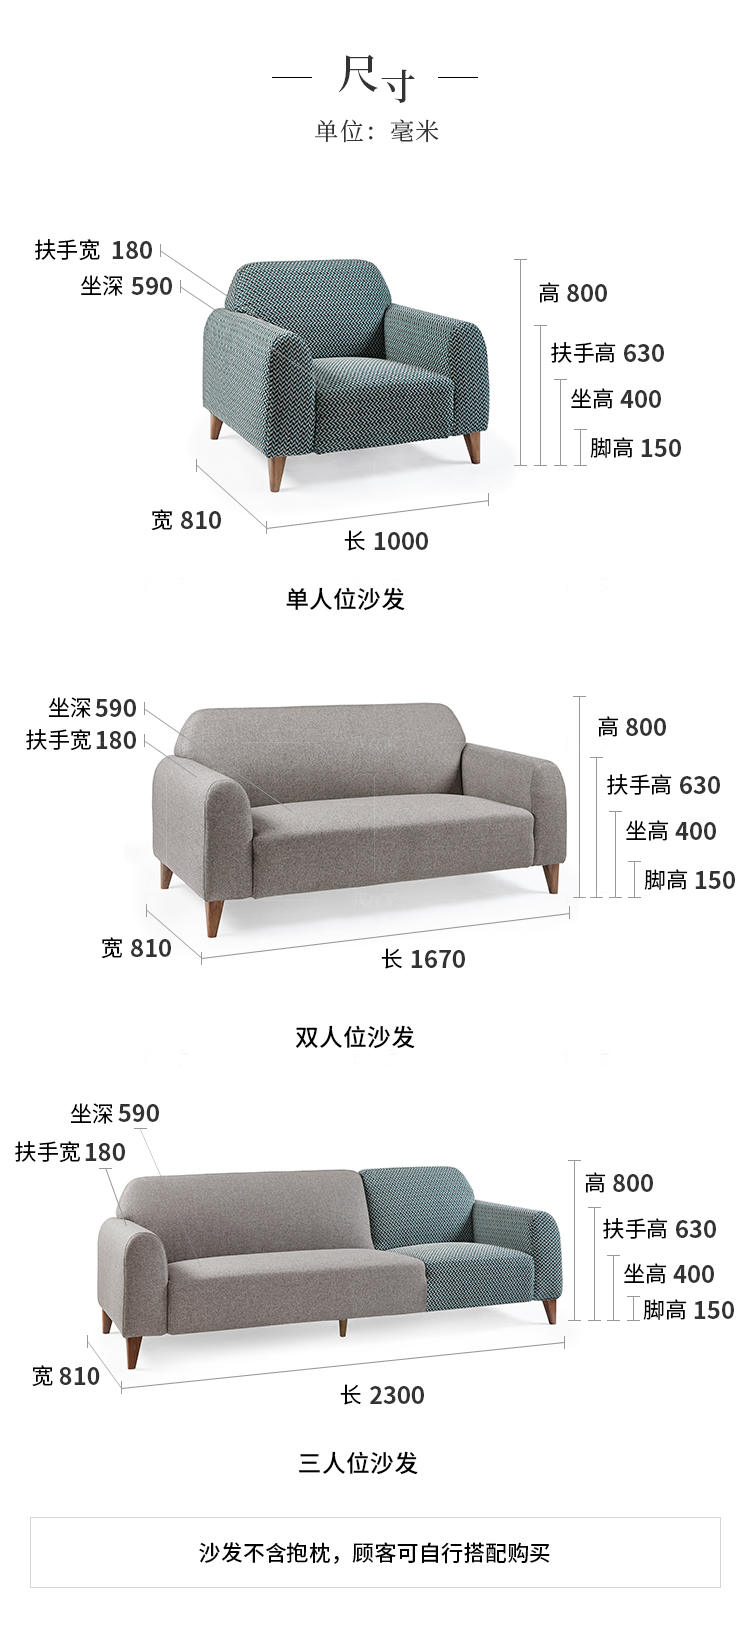 新中式风格小满沙发的家具详细介绍